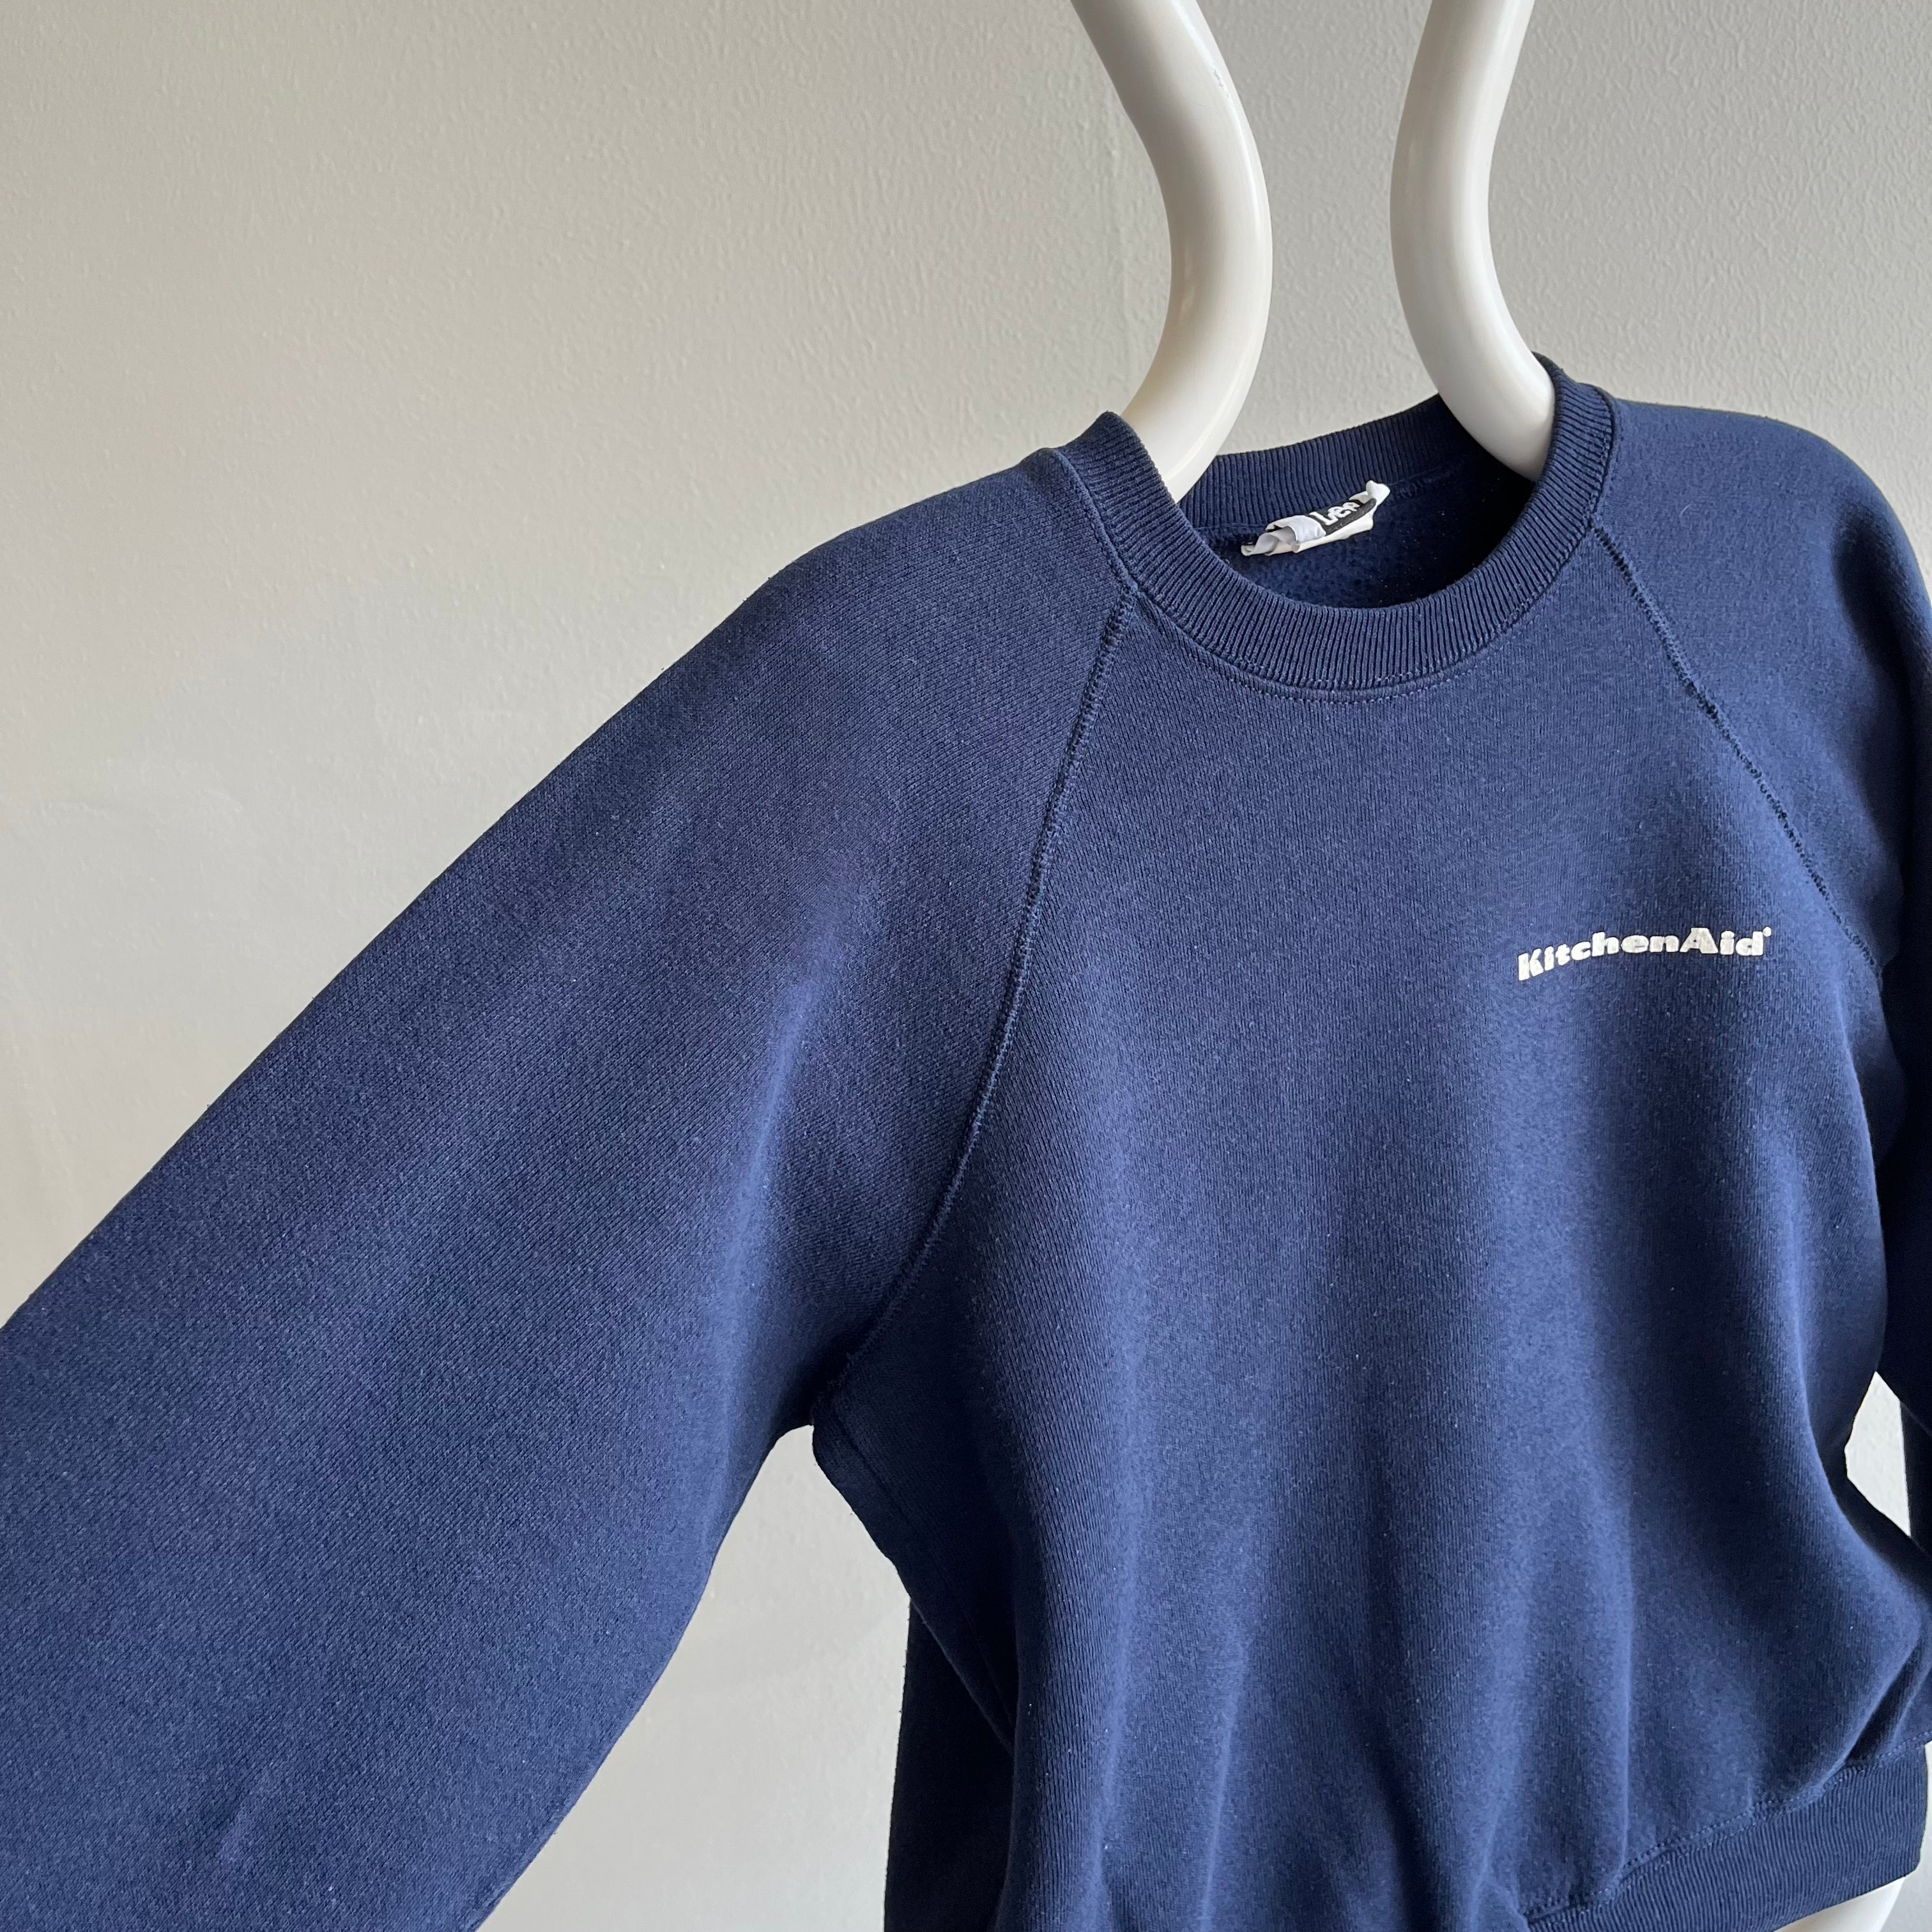 1980s Kitchenaid Sweatshirt by Lee